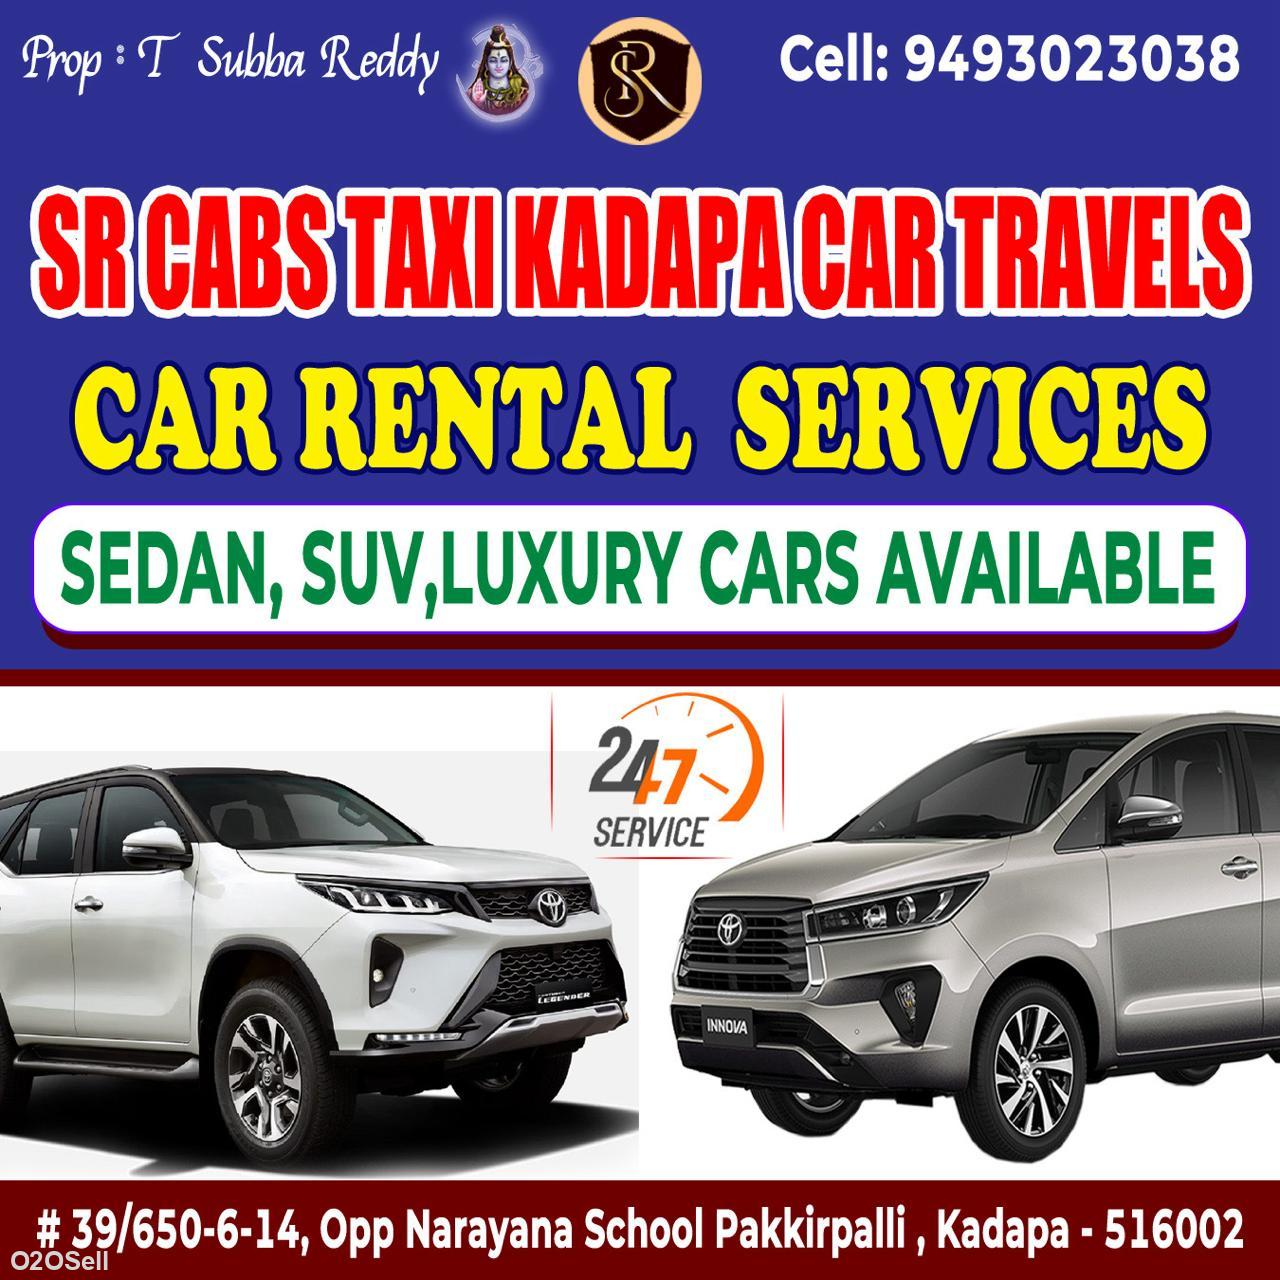 SR Cabs Kadapa - 09493023038 - Profile Image